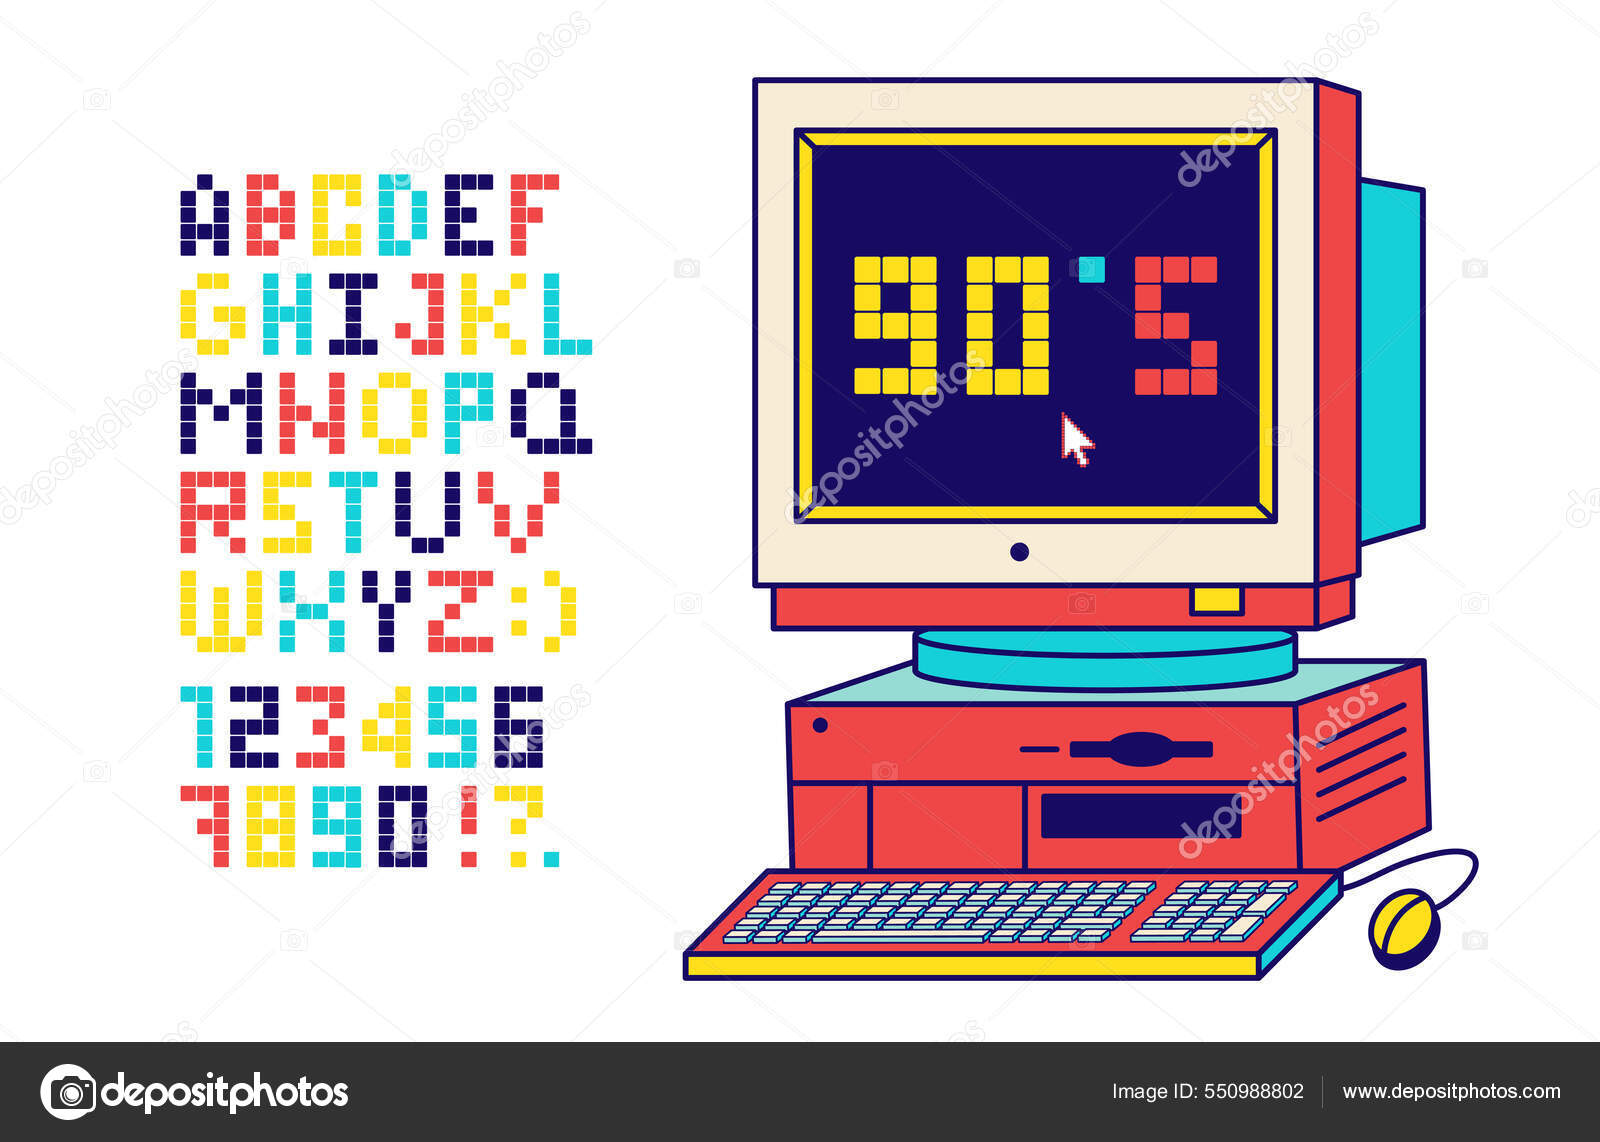 Ilustração vetorial de um jogo eletrônico bonito dos anos 80 e 90